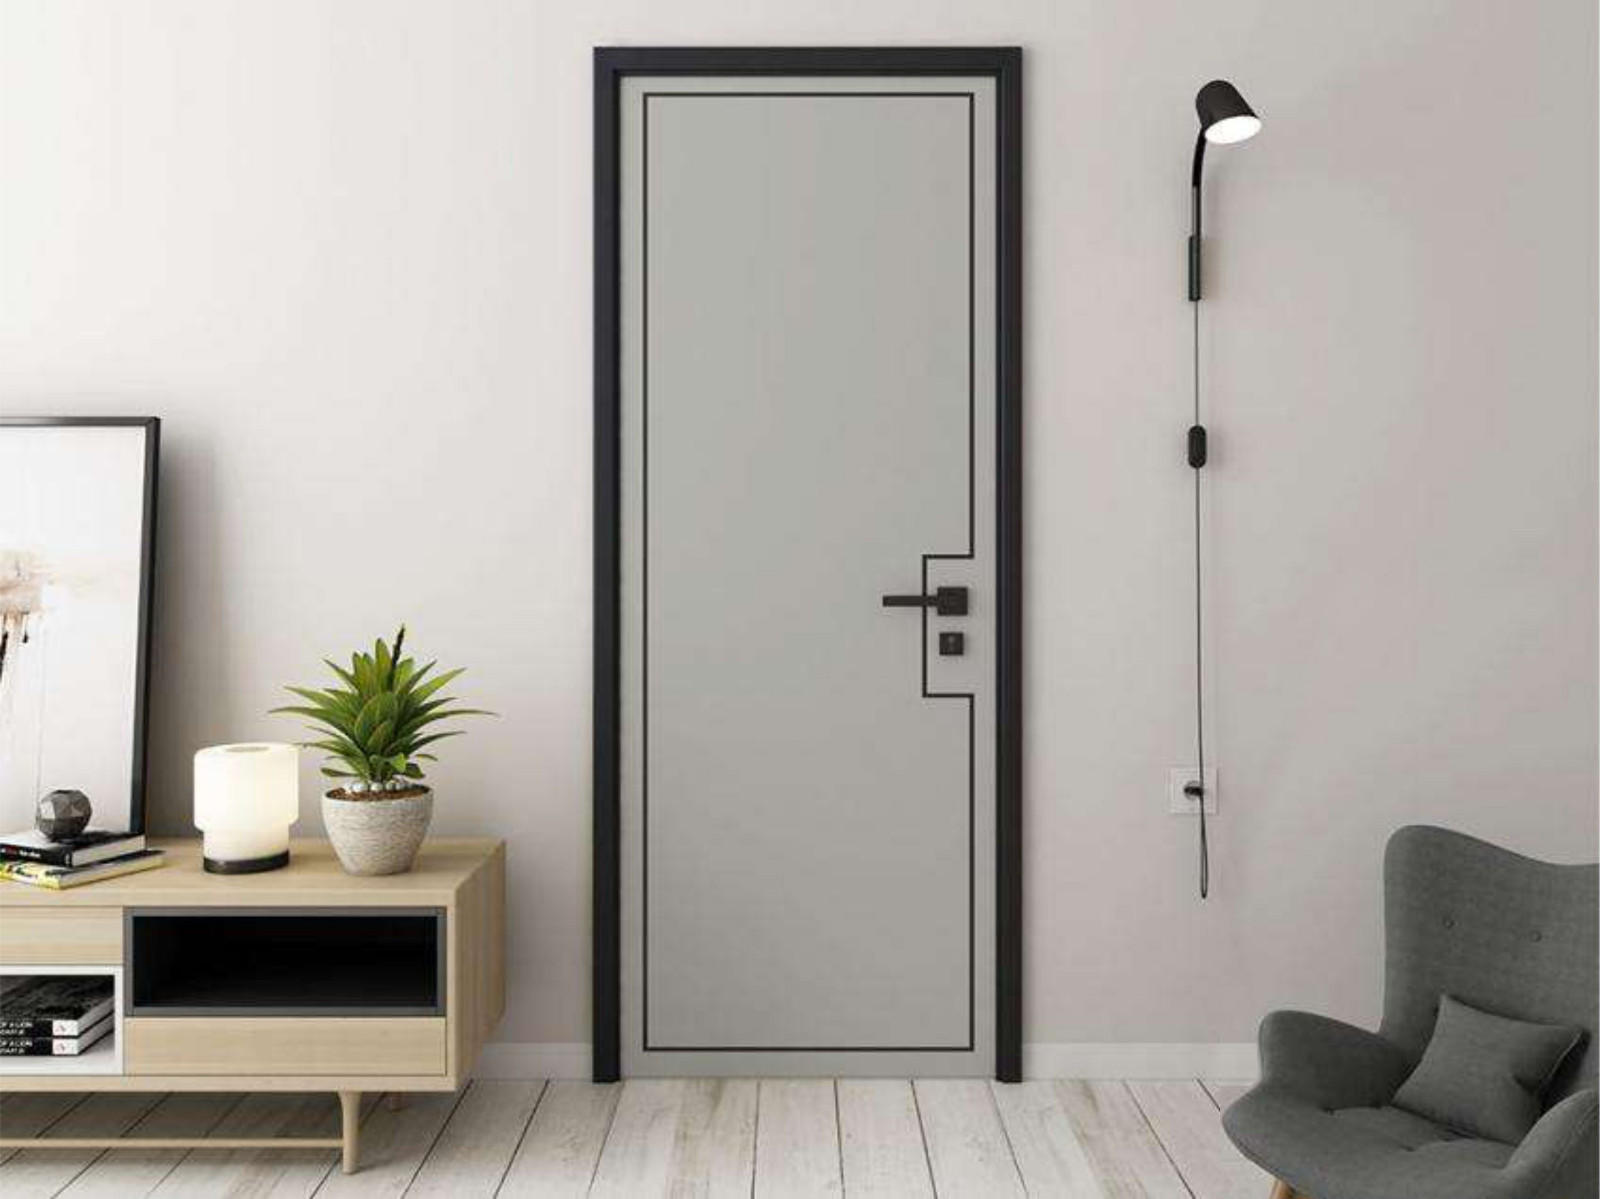 Casen custom what is hdf door supplier for room